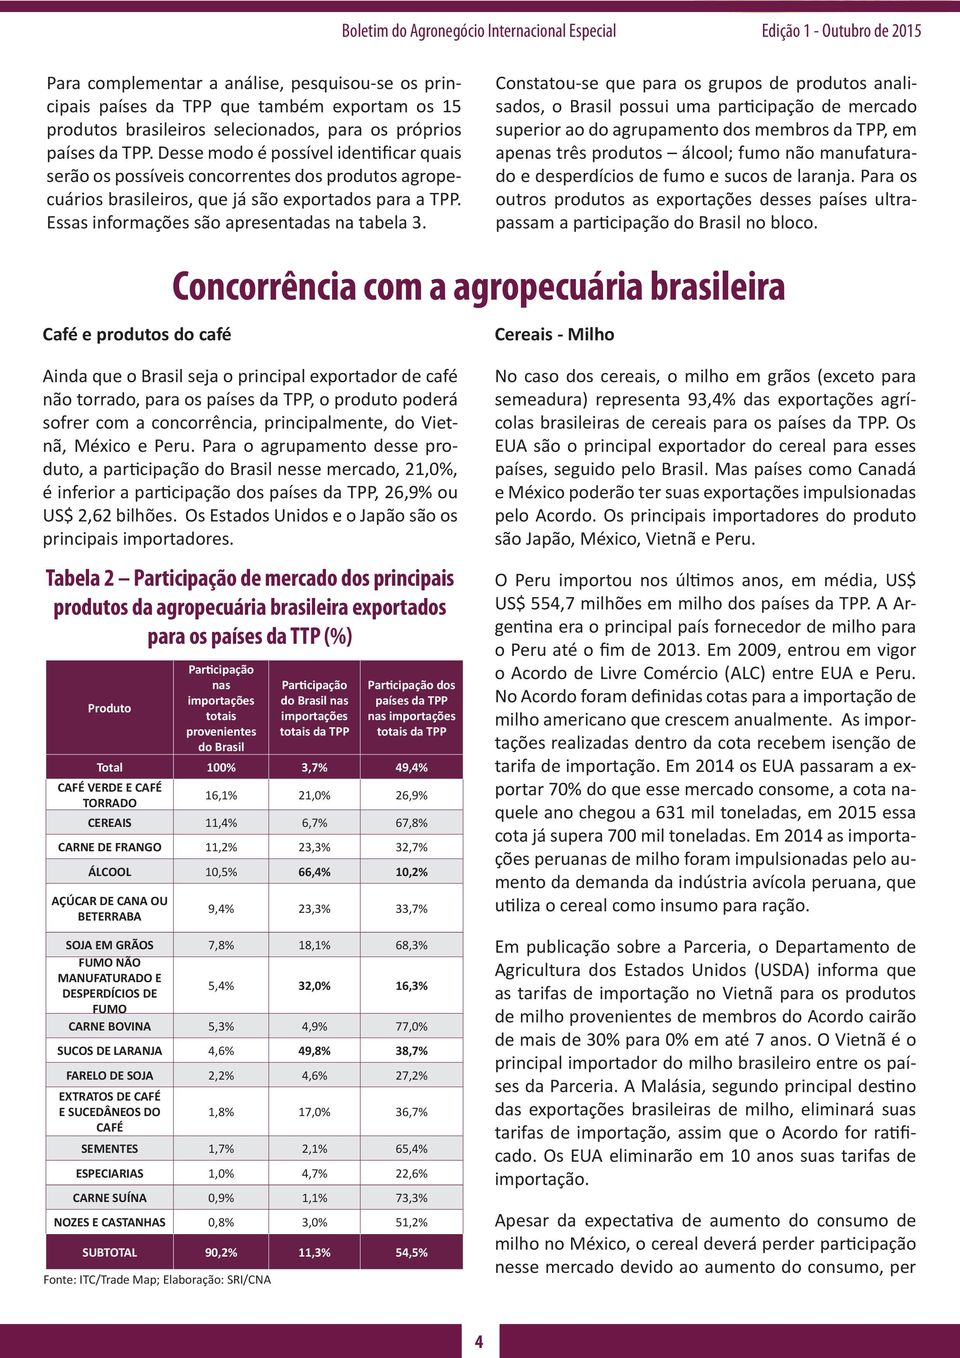 Constatou-se que para os grupos de produtos analisados, o Brasil possui uma participação de mercado superior ao do agrupamento dos membros da TPP, em apenas três produtos álcool; fumo não